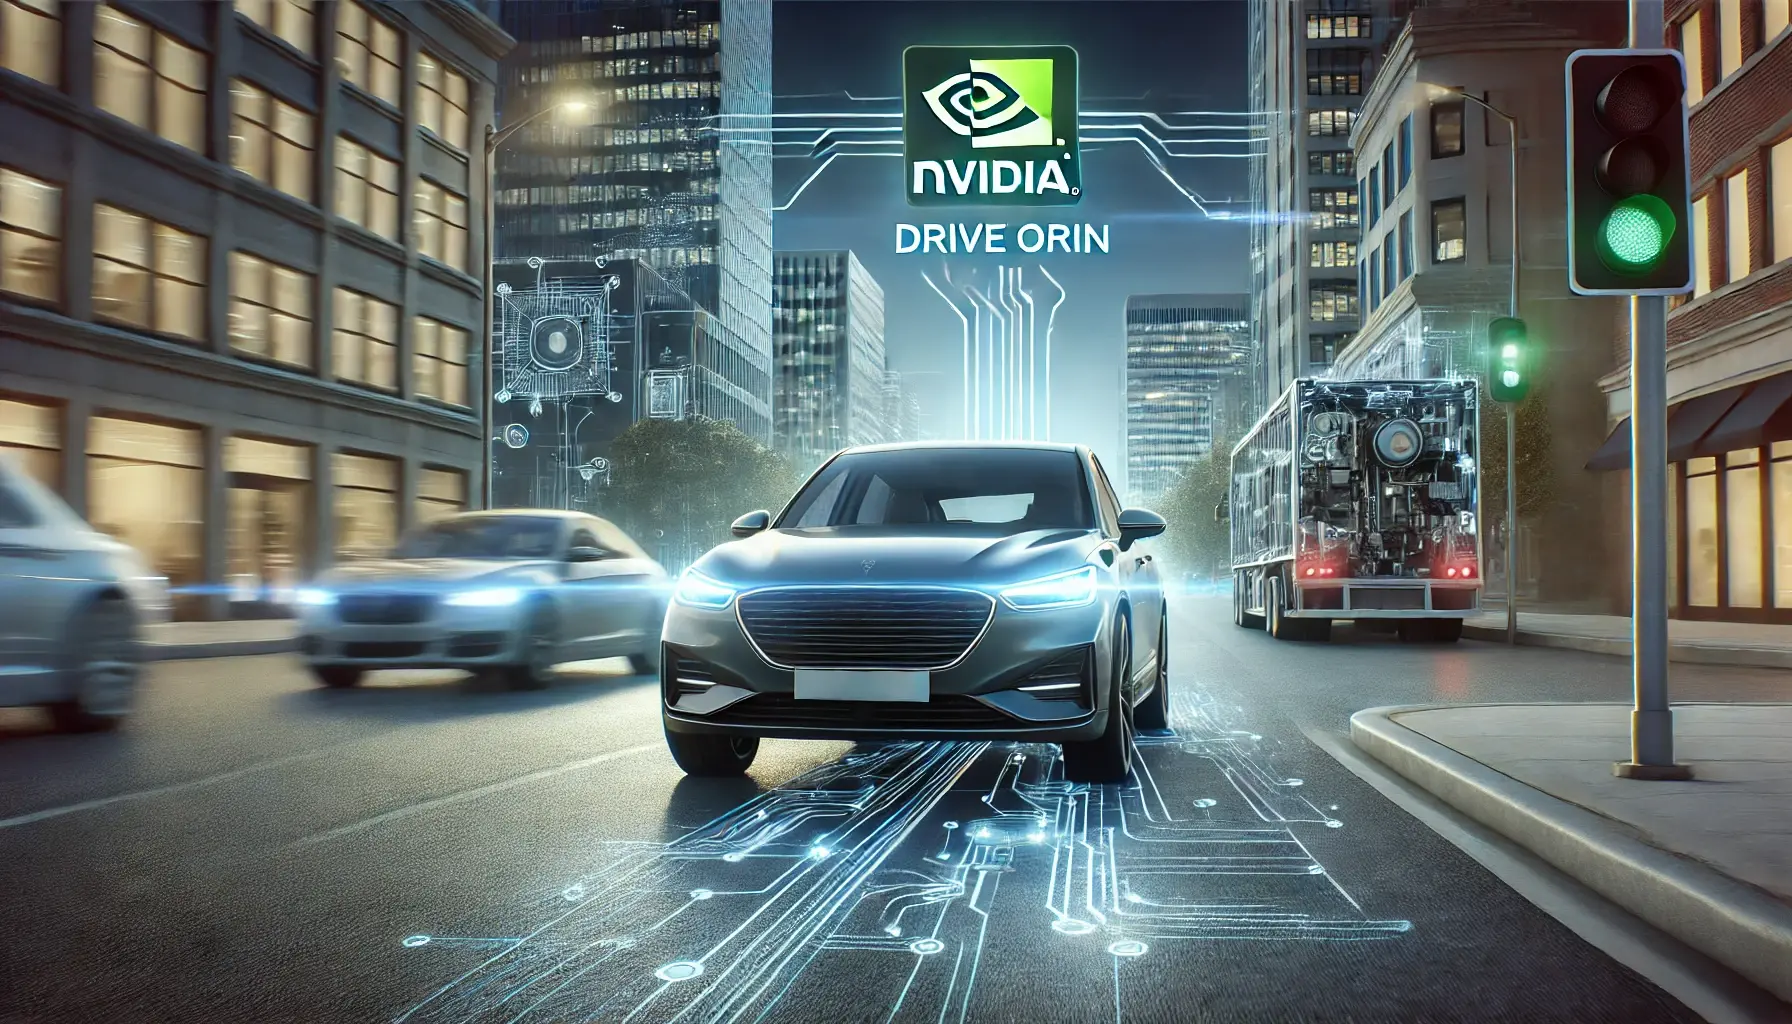 Nvidia lança DRIVE Orin: A revolução dos carros autônomos chegou!

A Nvidia é uma empresa renomada no setor de tecnologia e inovação, e acaba de lançar o DRIVE Orin, um sistema avançado que promete revolucionar a indústria de carros autônomos. Com a crescente demanda por veículos mais seguros, eficientes e inteligentes, o DRIVE Orin vem para atender essas necessidades e impulsionar a evolução da condução autônoma.

O que é o DRIVE Orin?

O DRIVE Orin é um sistema completo de computação para carros autônomos, desenvolvido pela Nvidia com tecnologias de ponta.